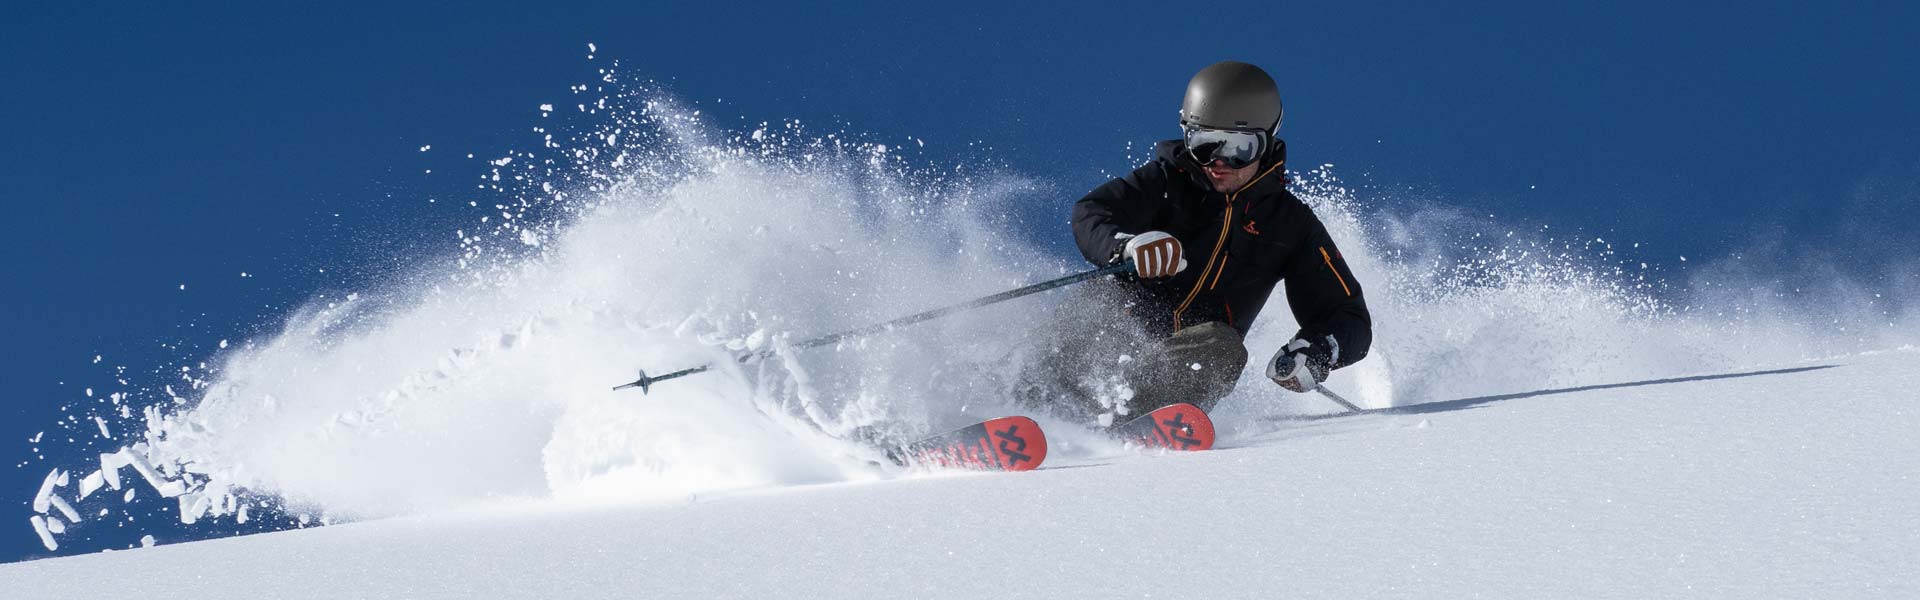 Pantalón de esquí mujer Advancer - Reforcer, ropa de esquí de alta calidad,  hecha en Europa